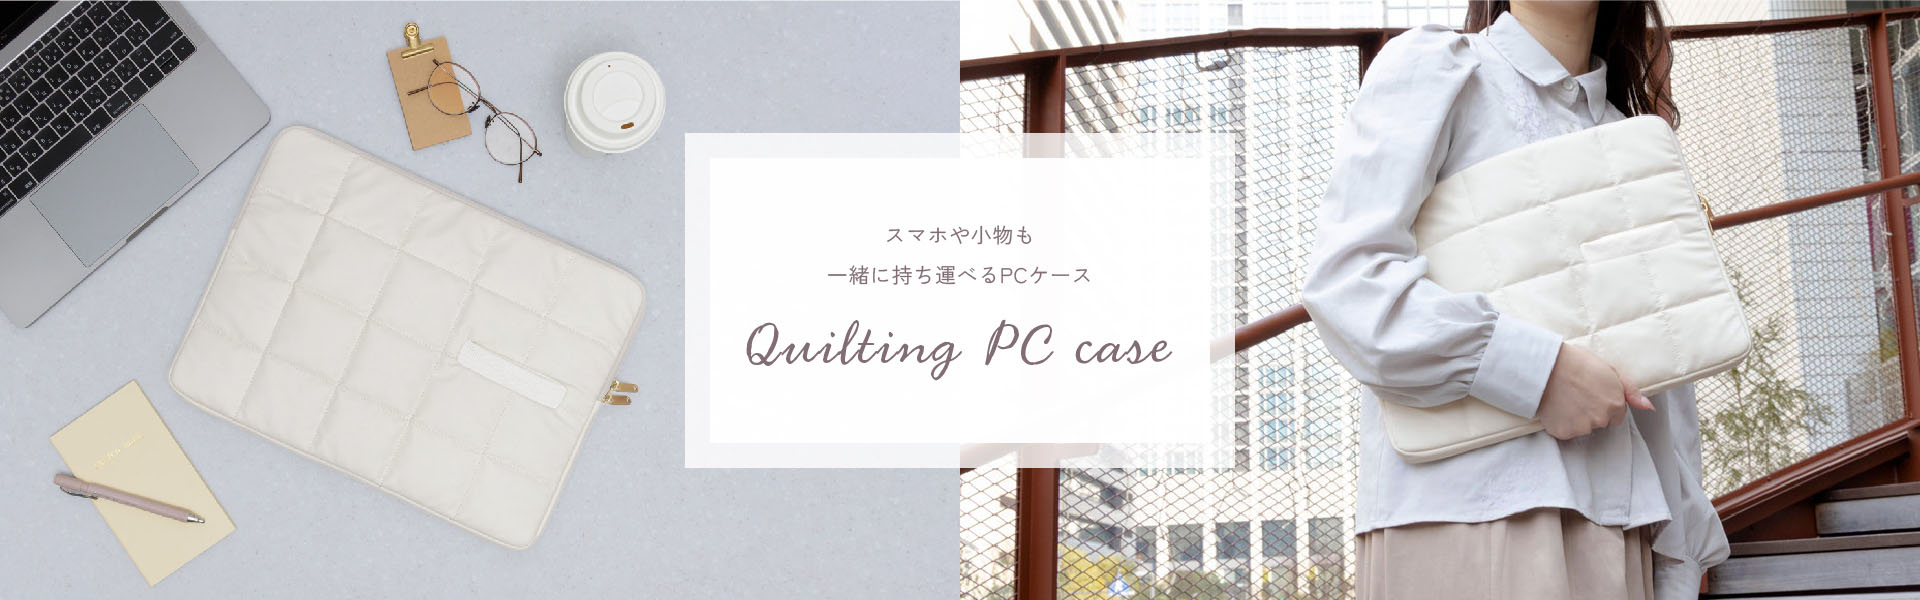 Quilting PC case